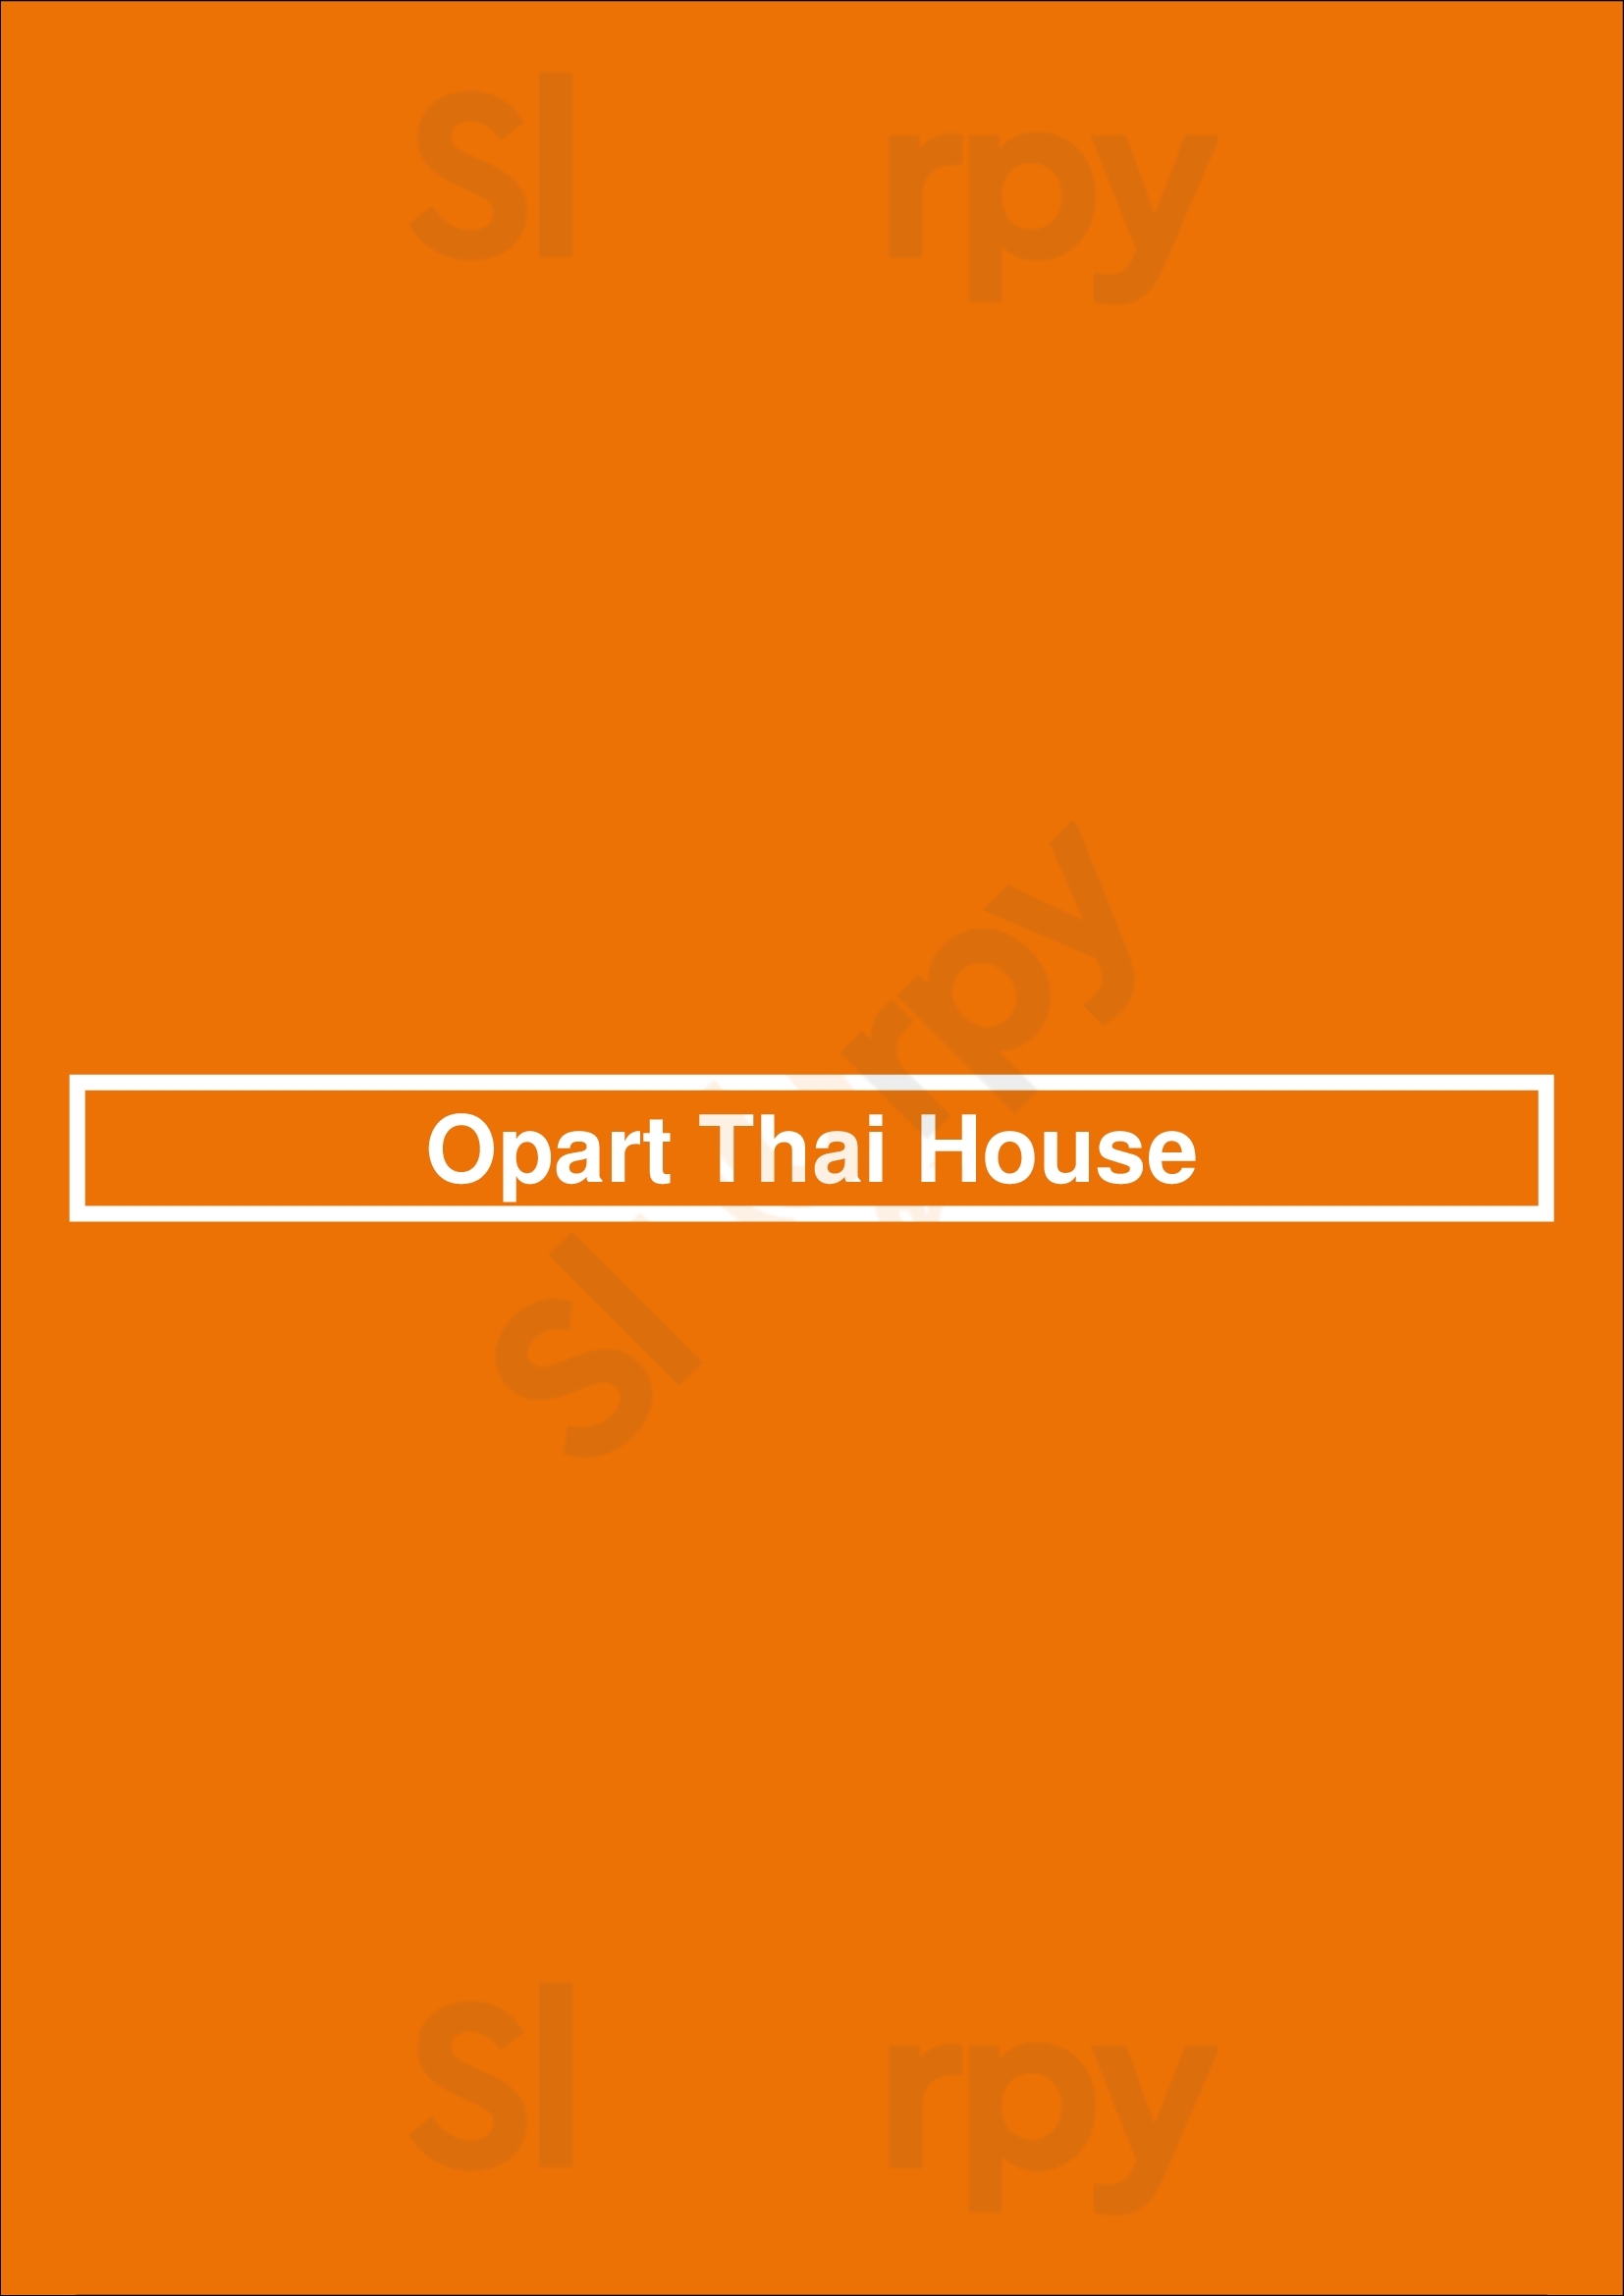 Opart Thai House Chicago Menu - 1